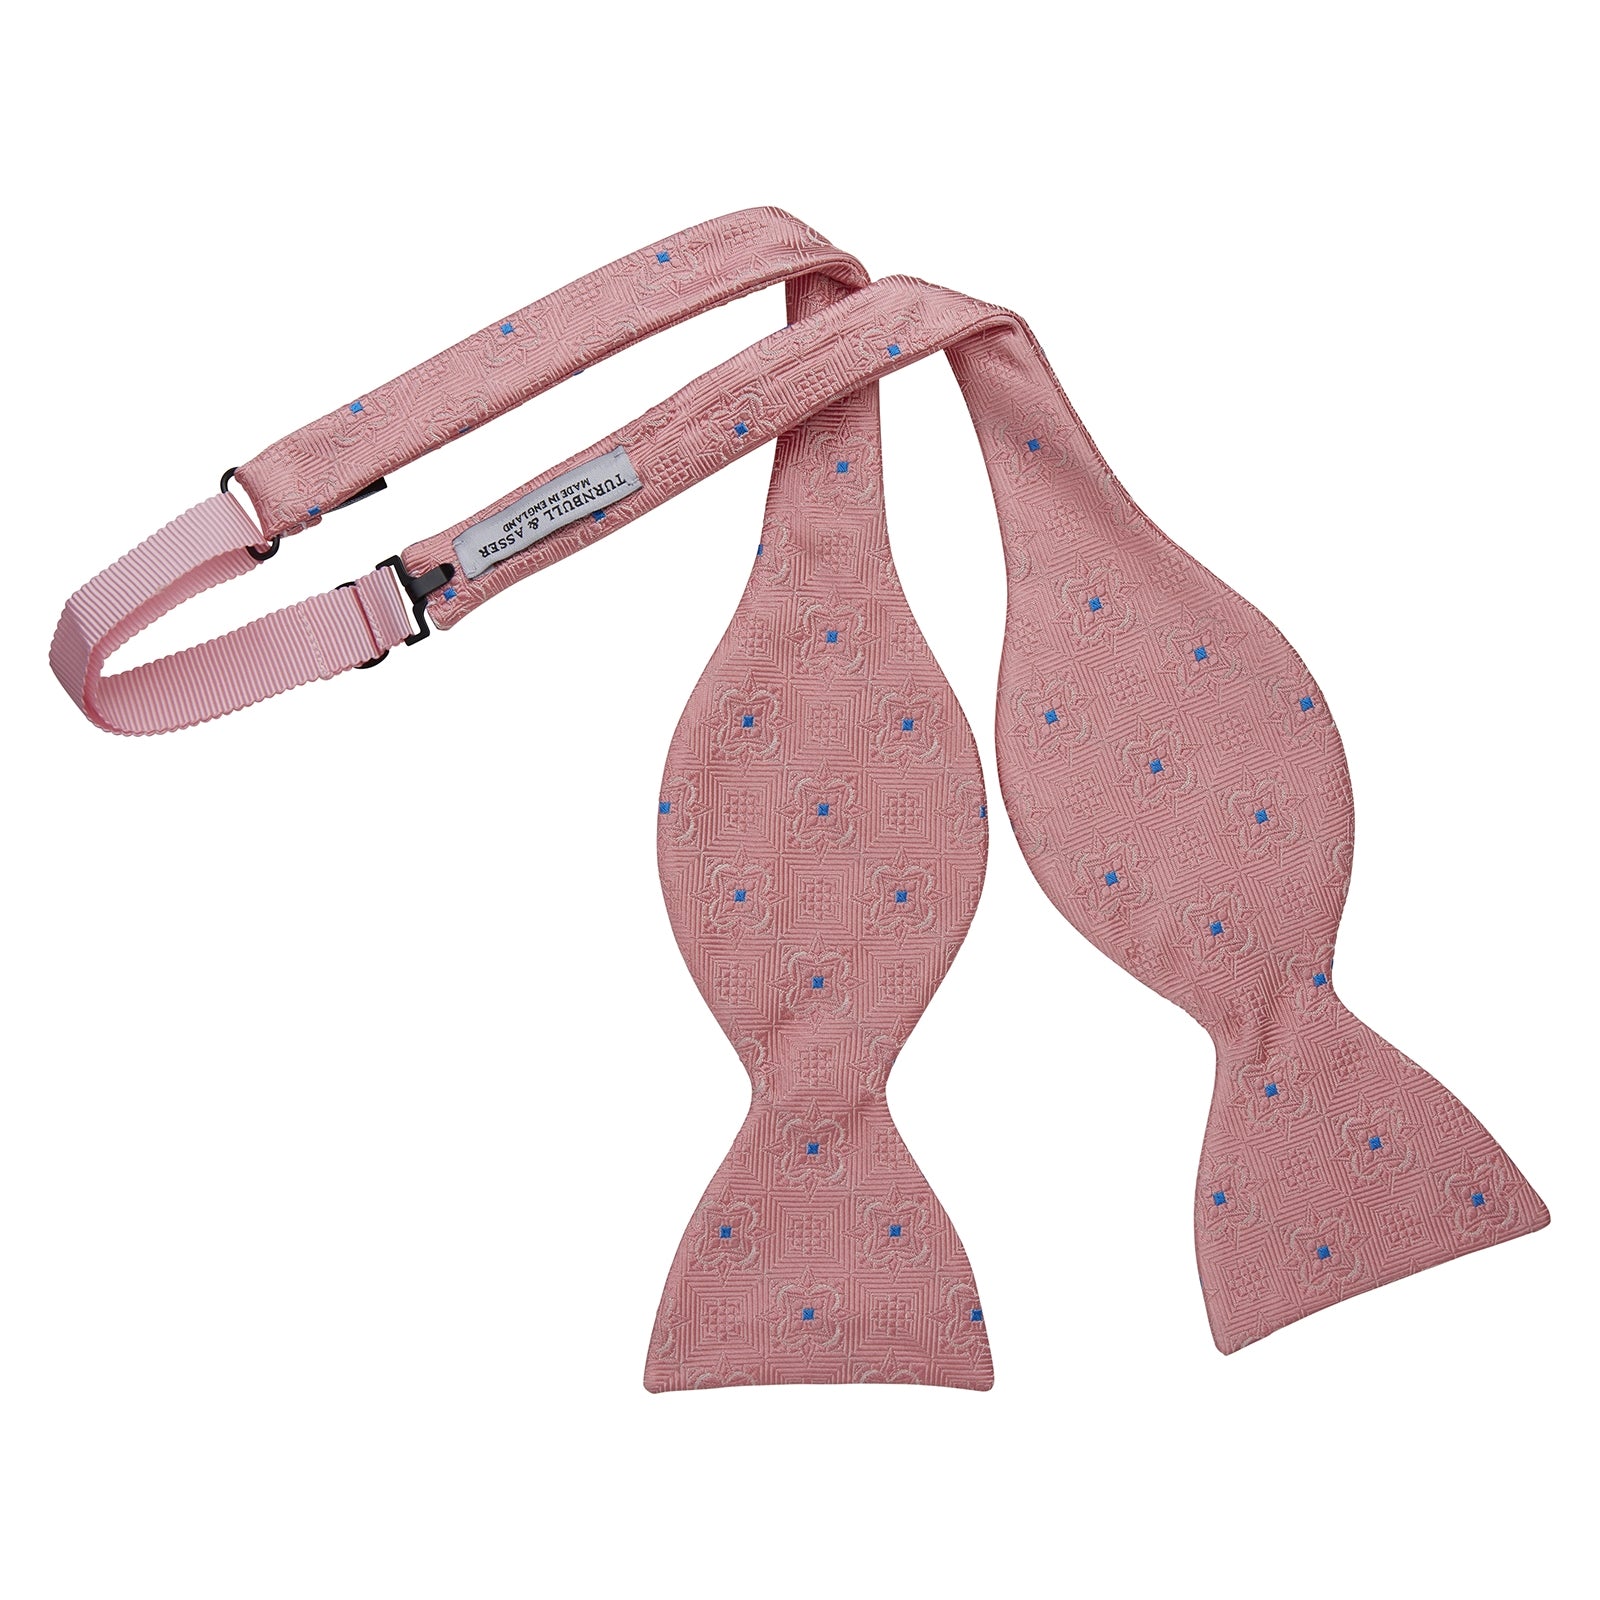 Pink Flower Mosaic Silk Bow Tie